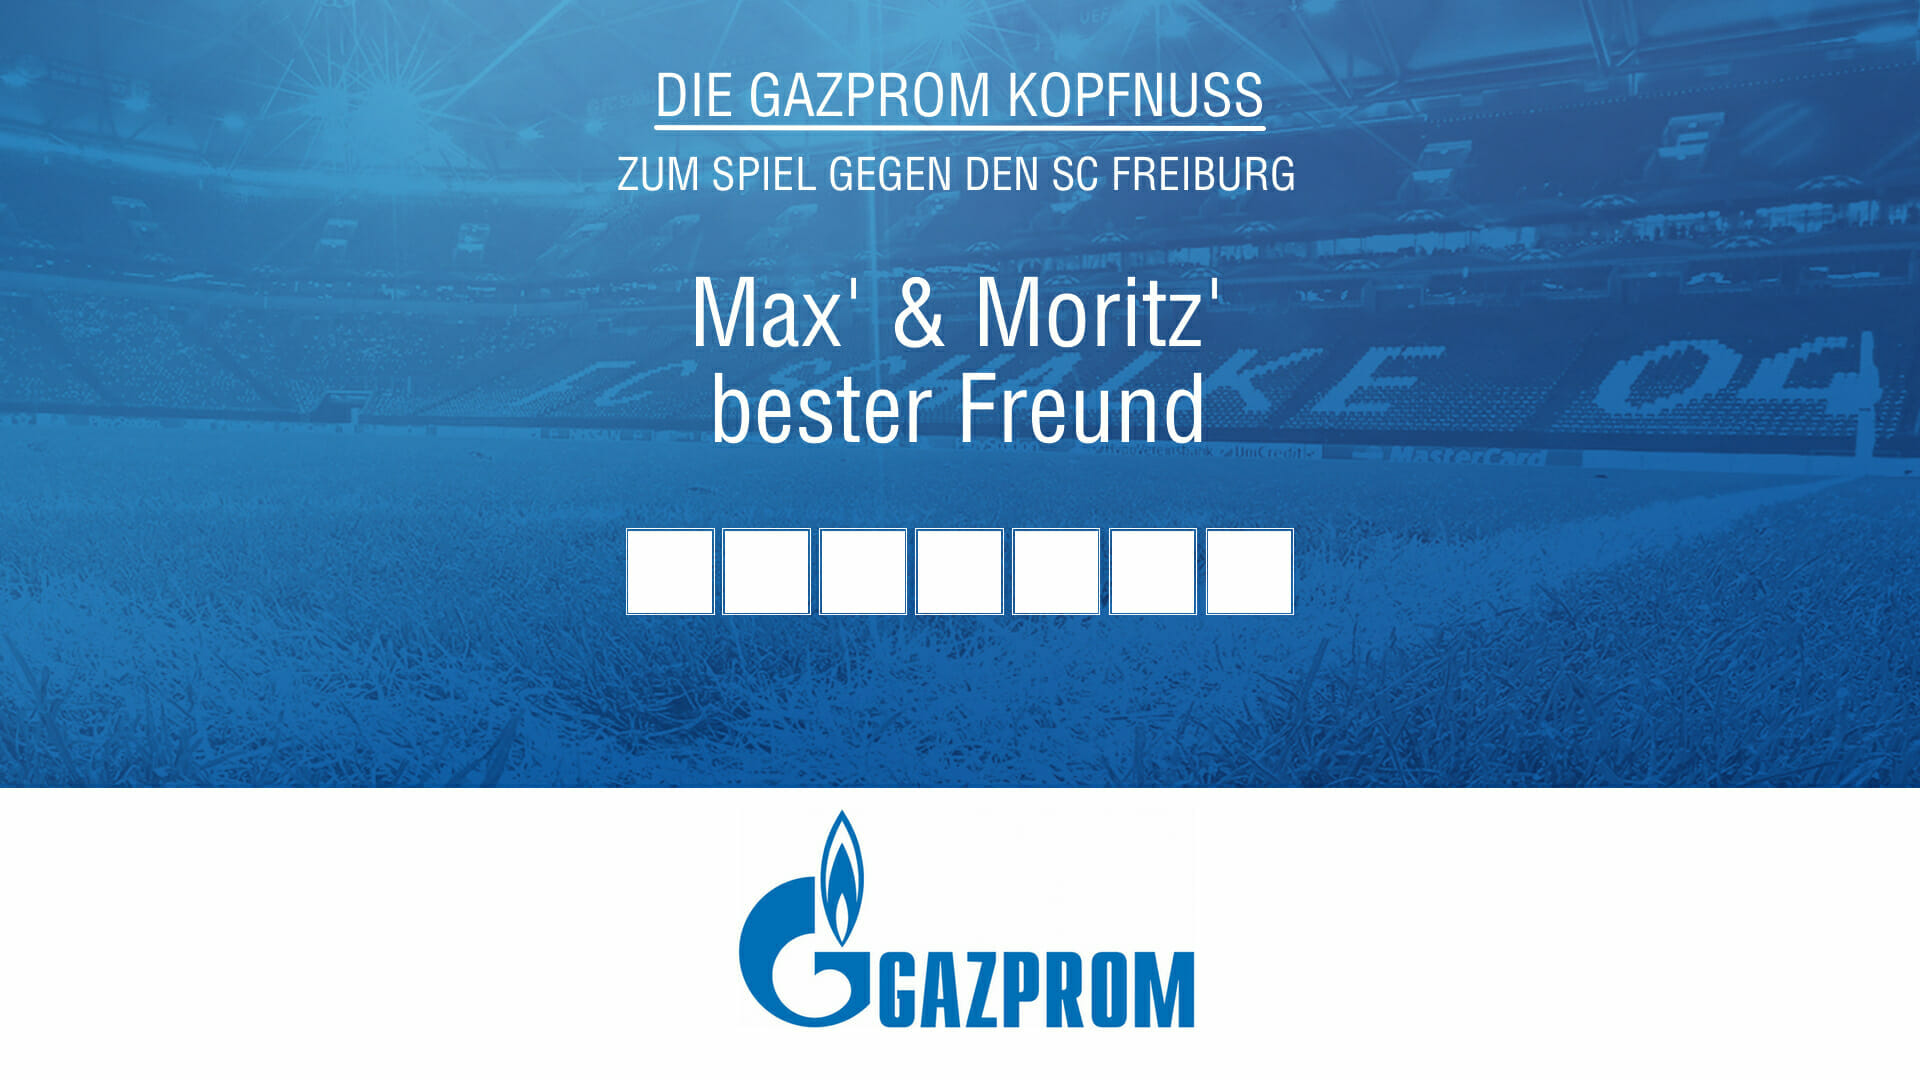 Gazprom Kopfnuss zum Spiel gegen Freiburg